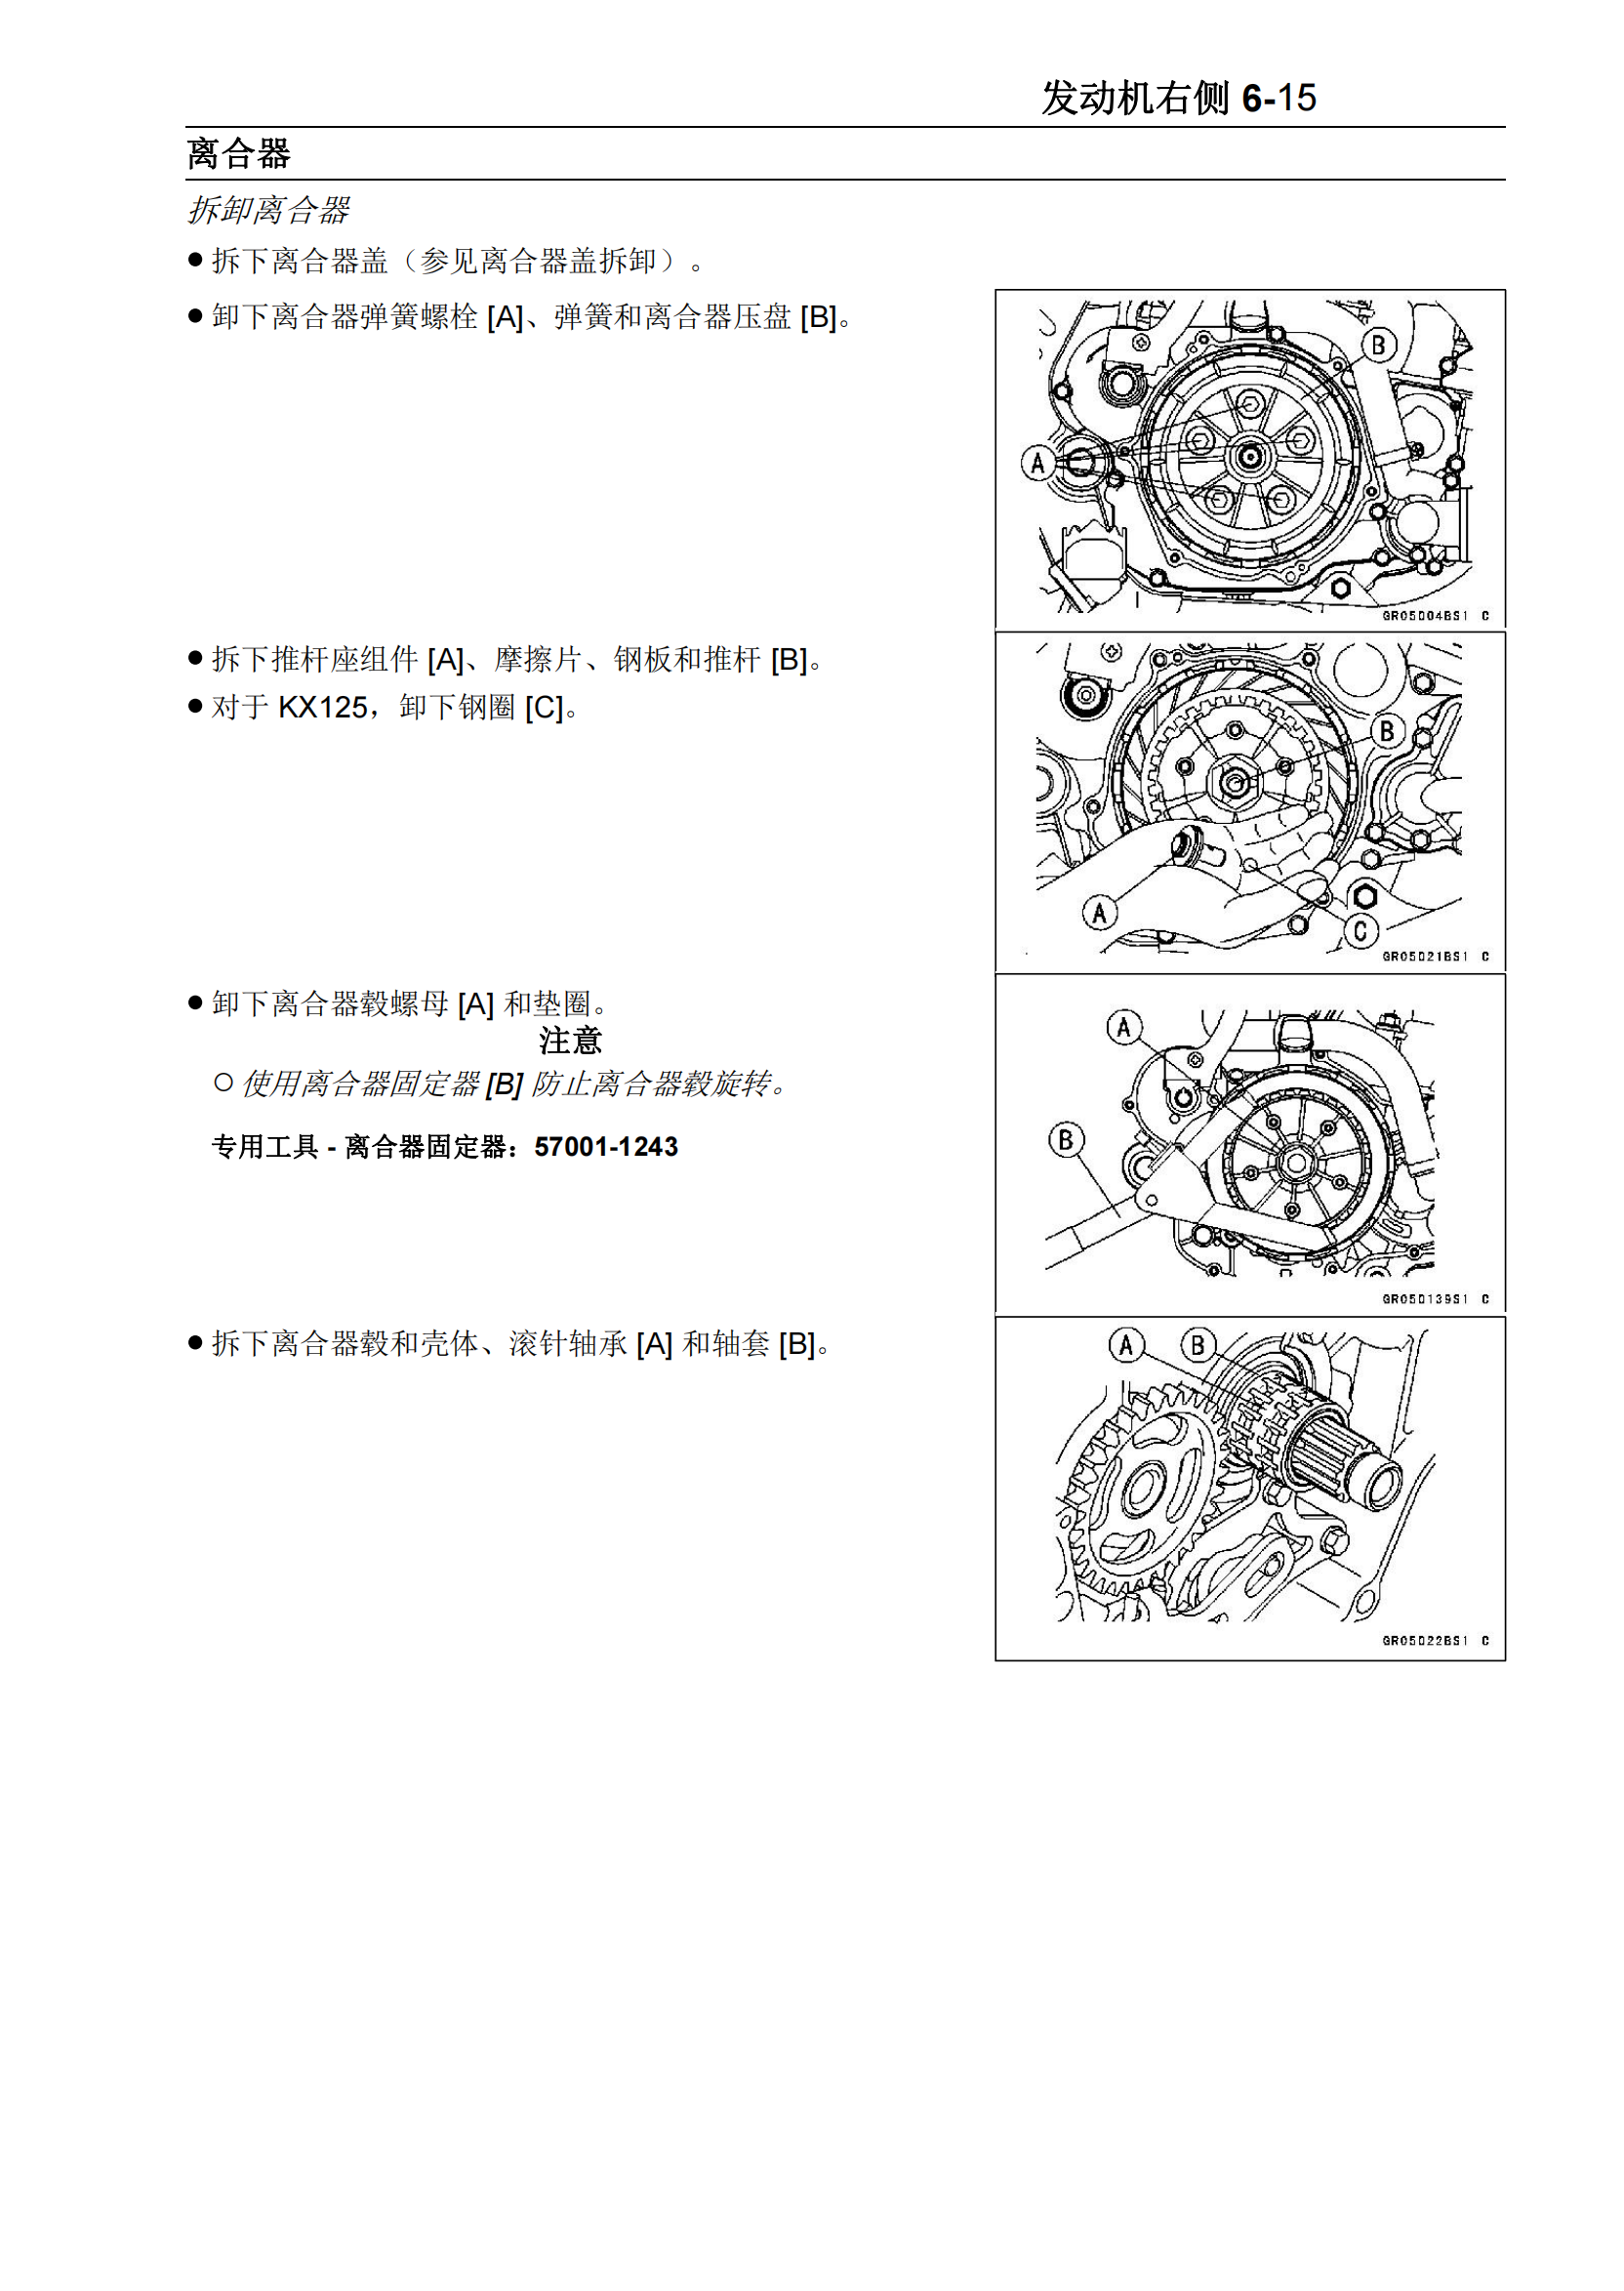 简体中文2003-2004年川崎kx125 kx250维修手册kawasaki kx125 kx250 维修手册插图4